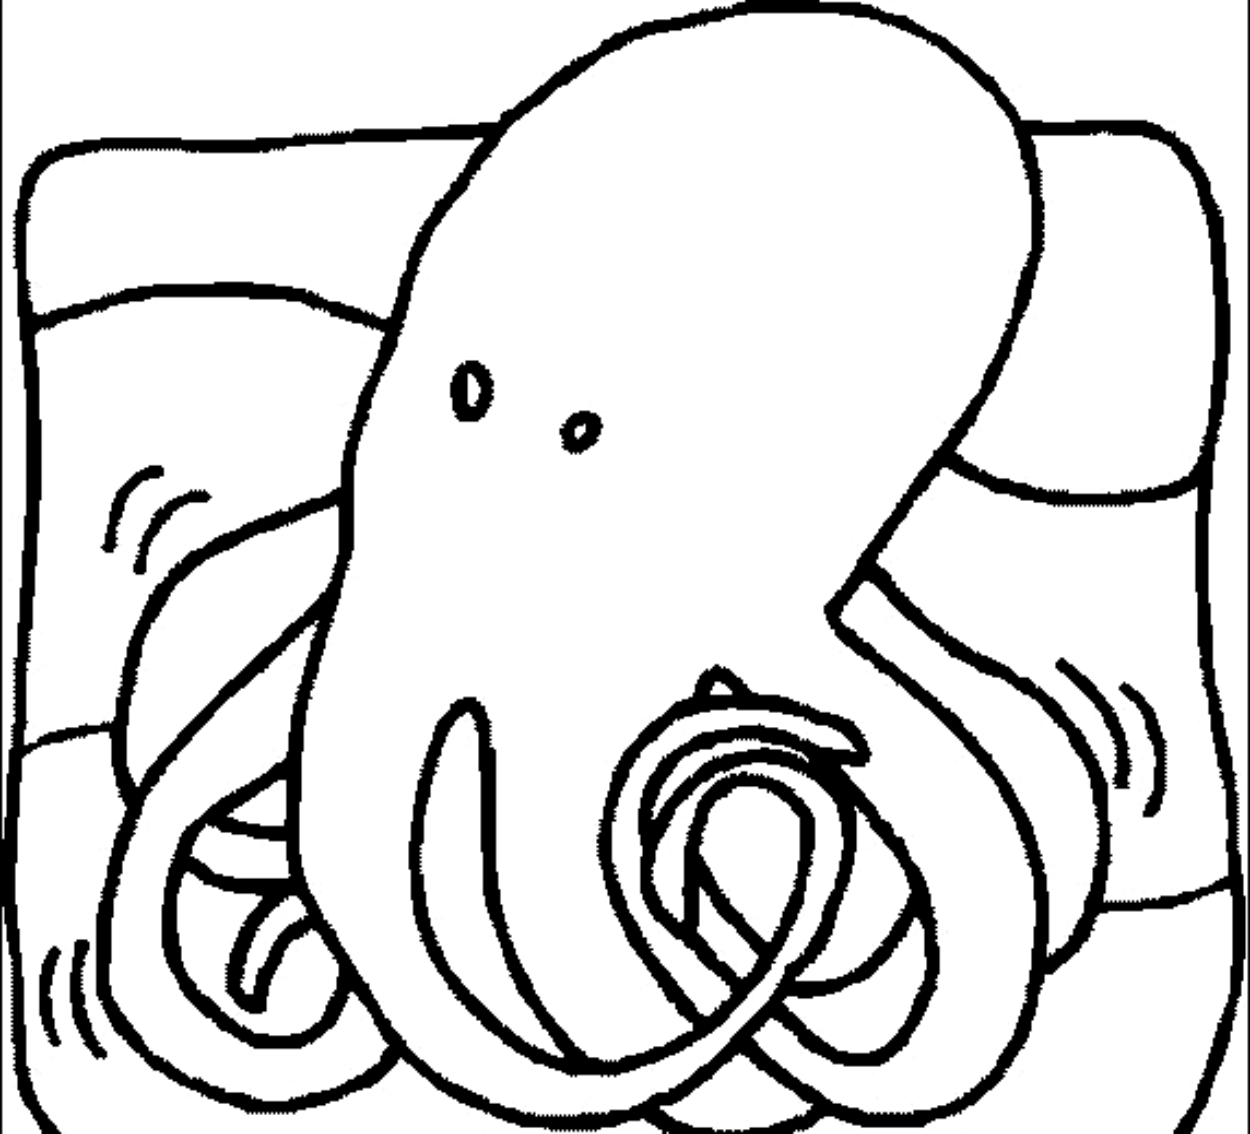 Tekening 7 octopussen om af te drukken en te kleuren